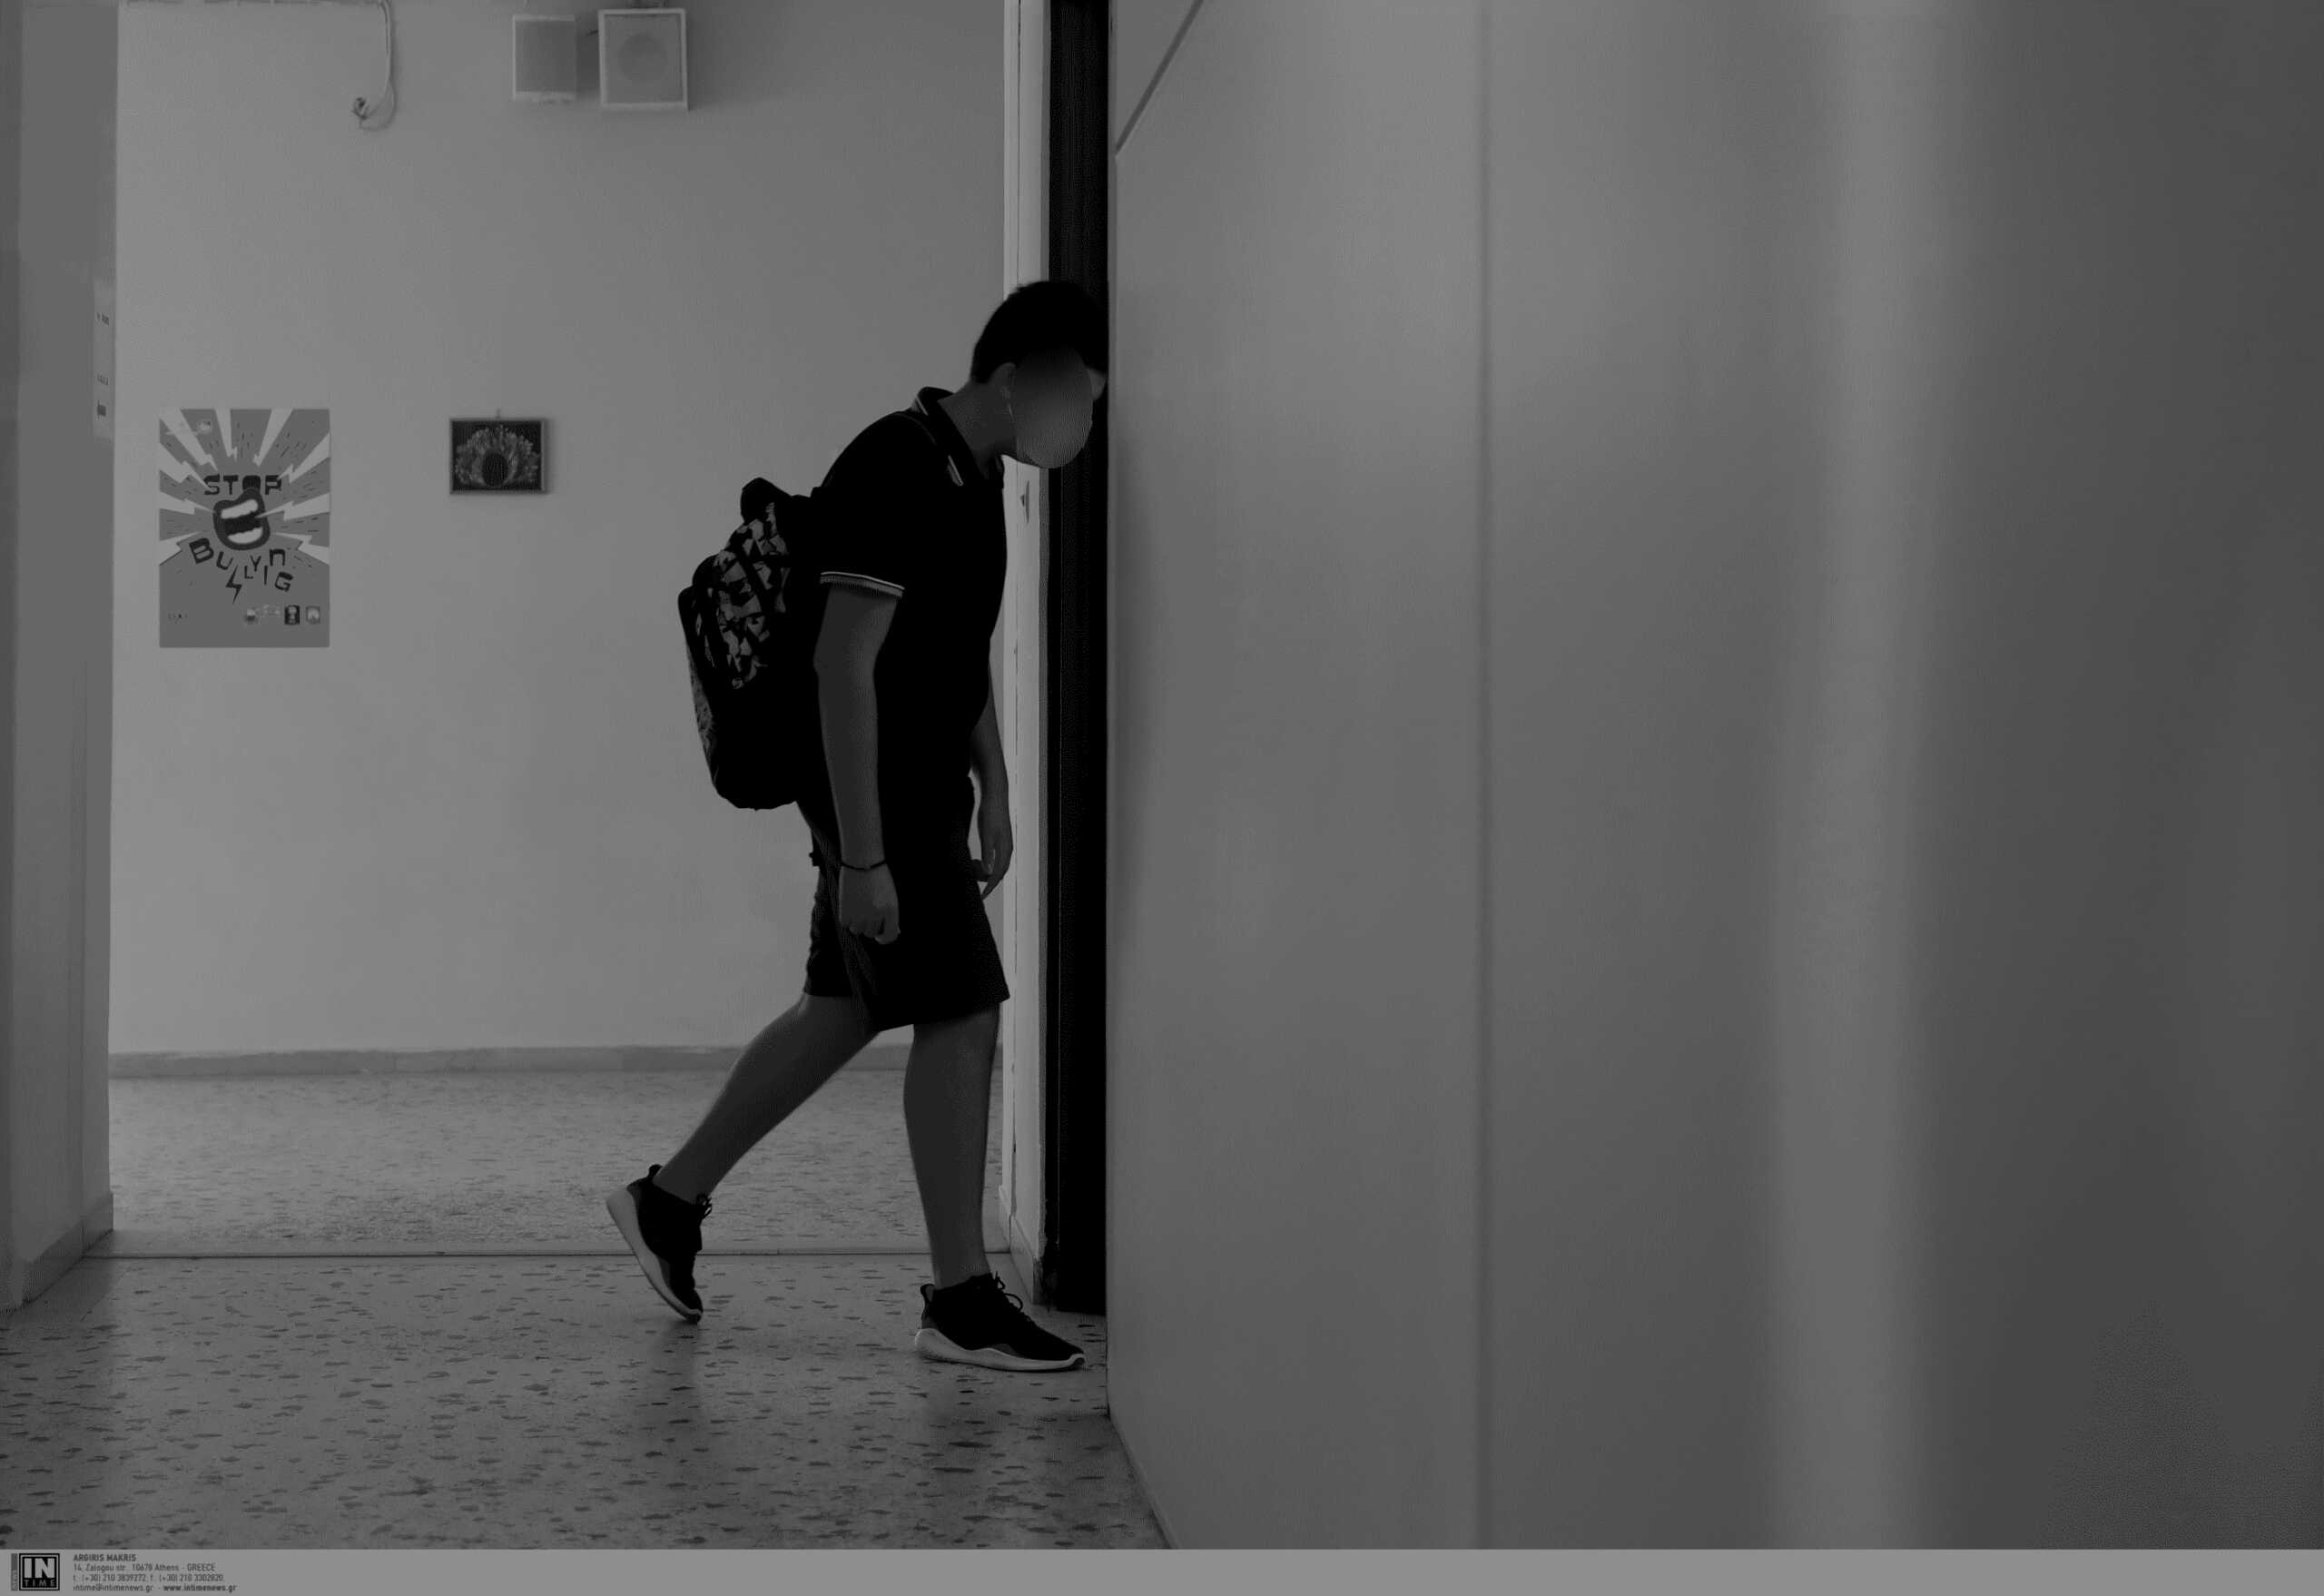 Γαλλία: H αυτοκτονία μαθητή φέρνει στο προσκήνιο το bullying στα σχολεία